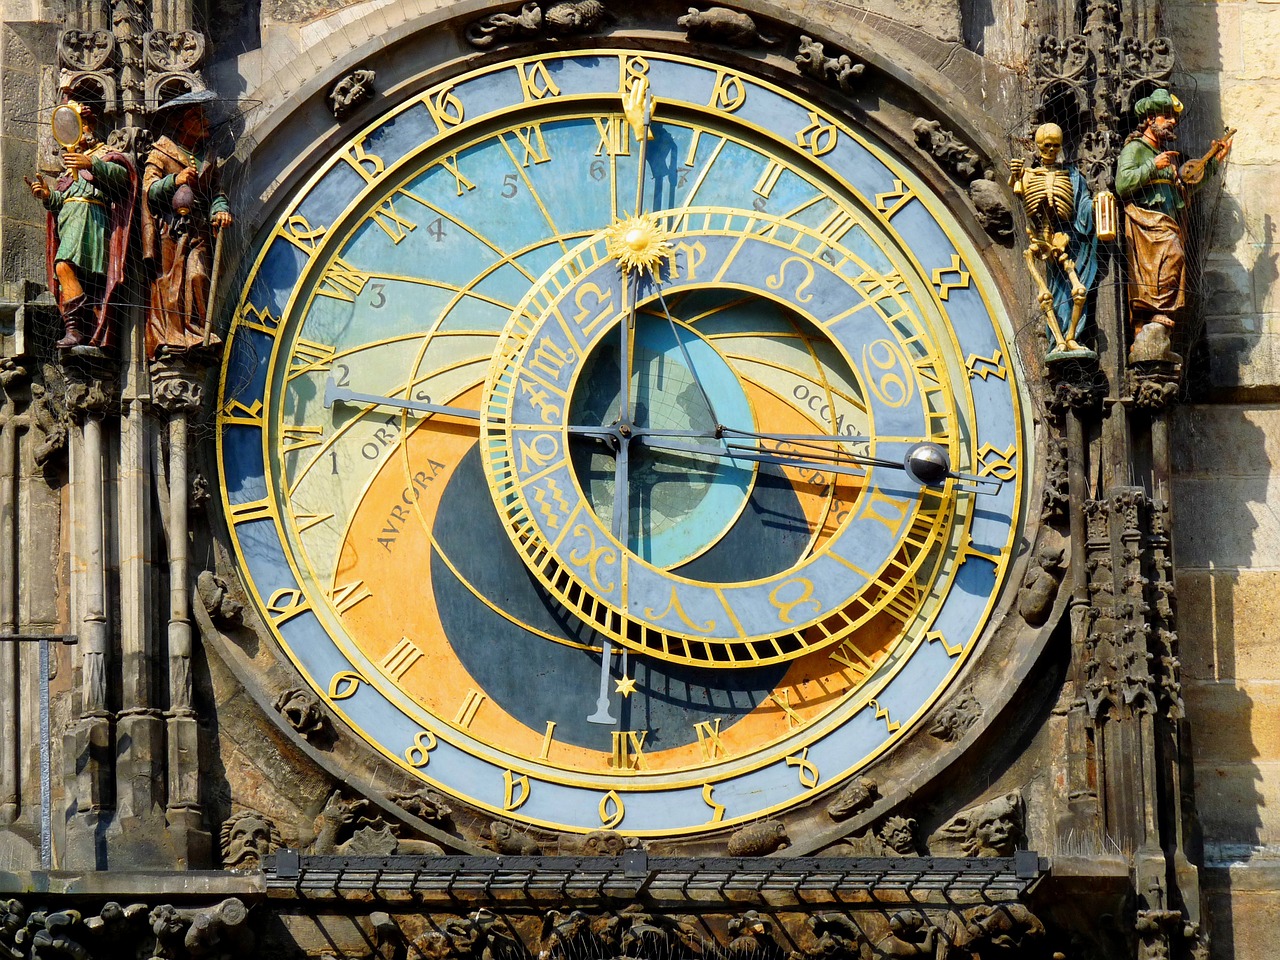 Astrologický astroláb, astronomické hodiny a Pražský orloj - třetí nejstarší orloj na světě